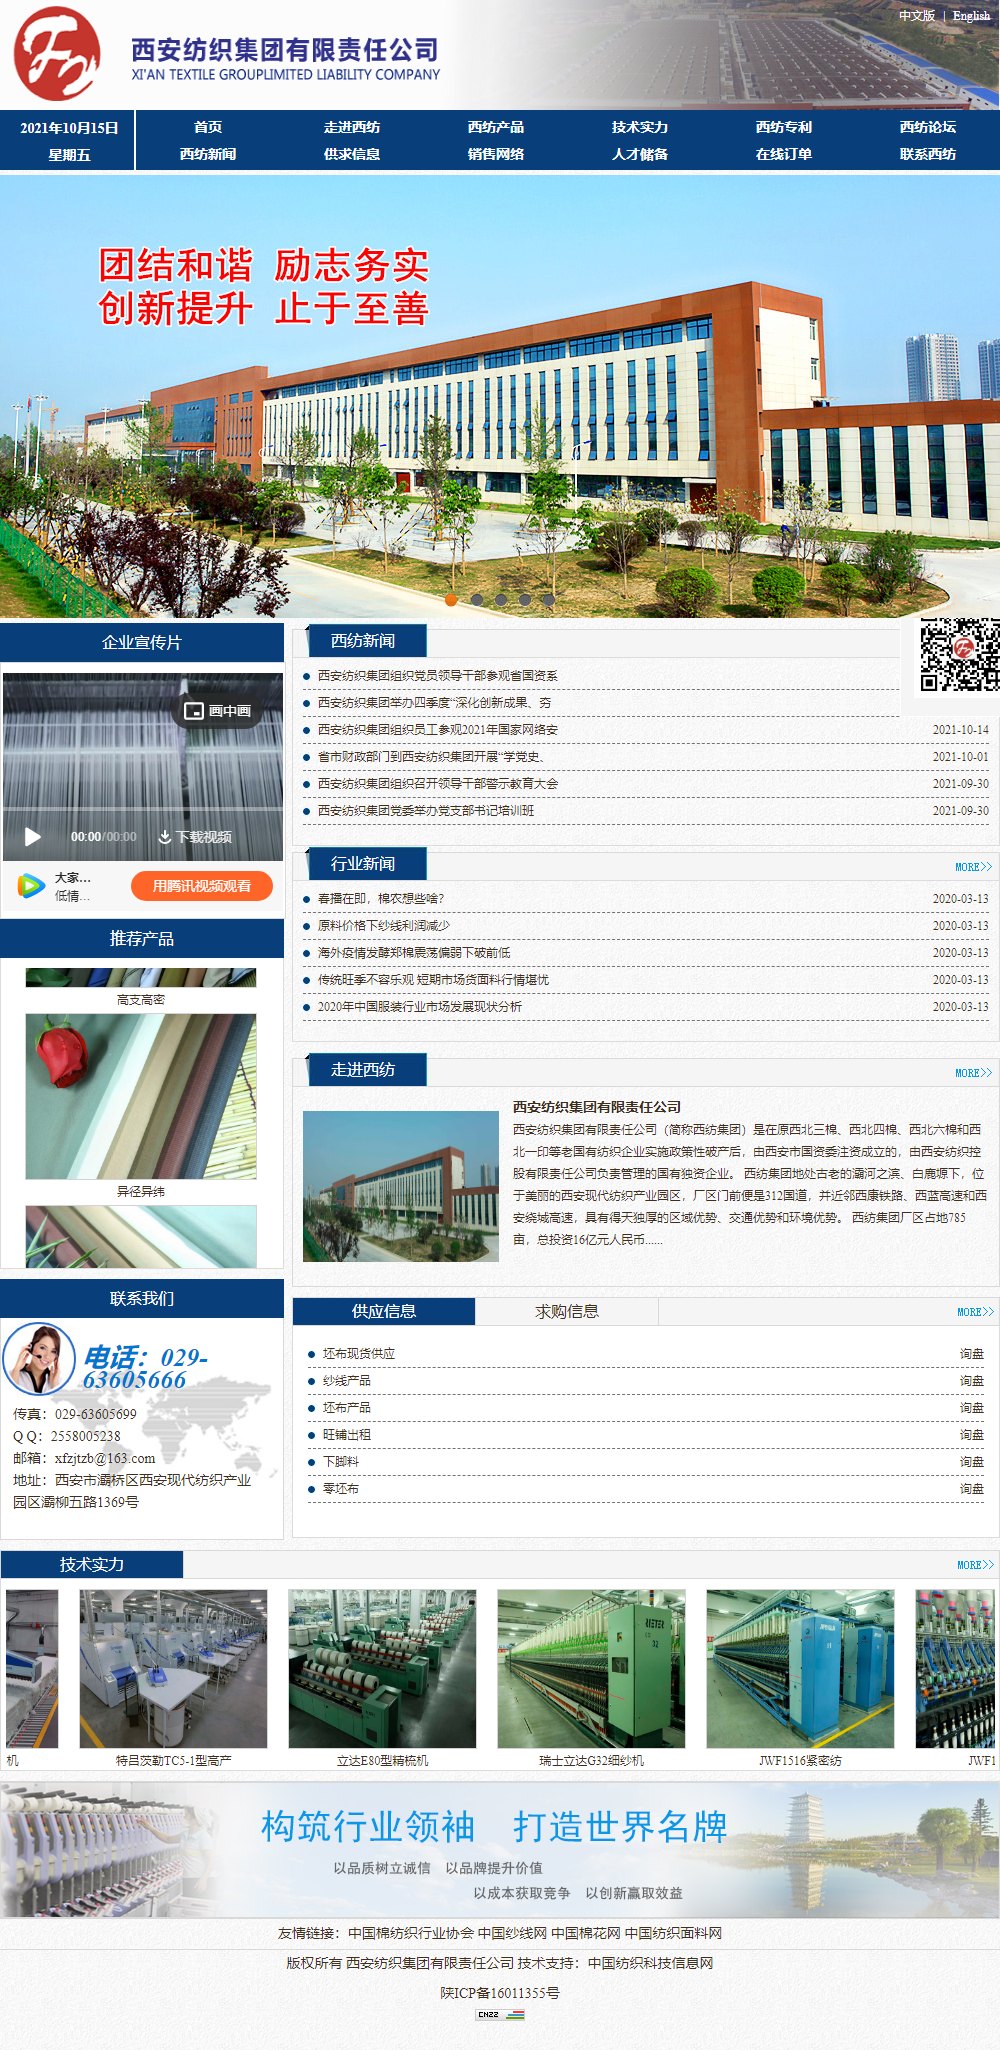 西安纺织集团有限责任公司网站案例